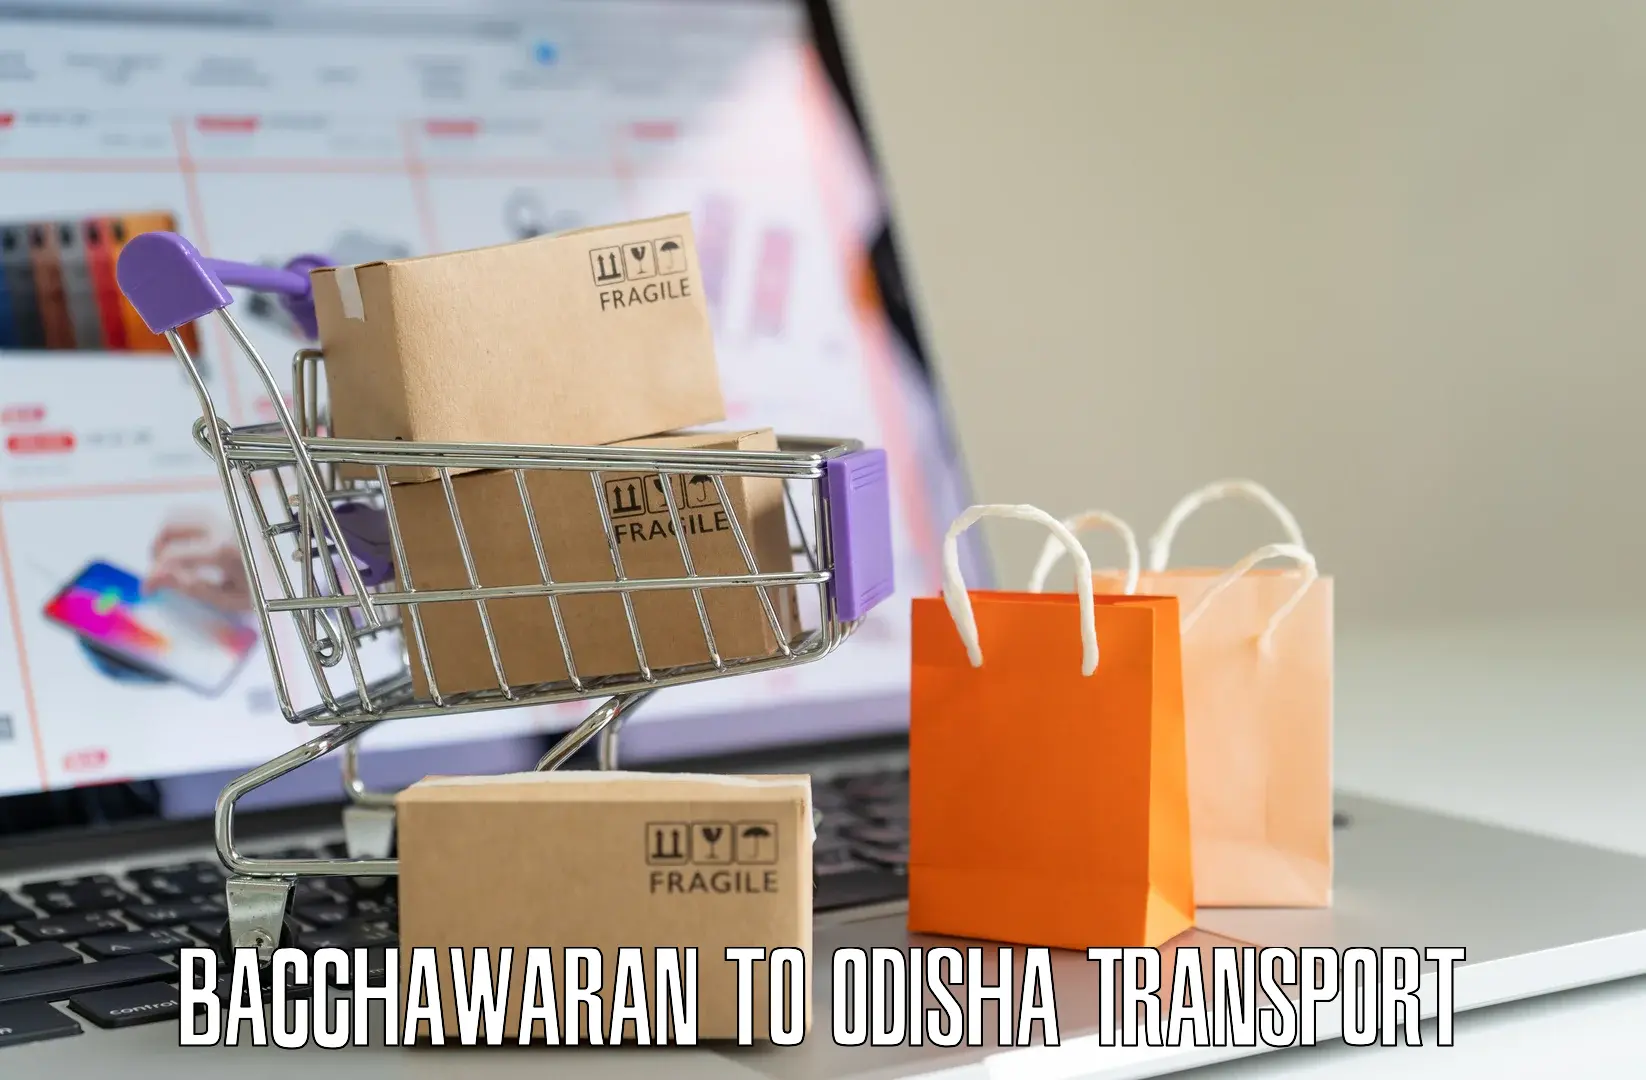 Furniture transport service Bacchawaran to Jaraka